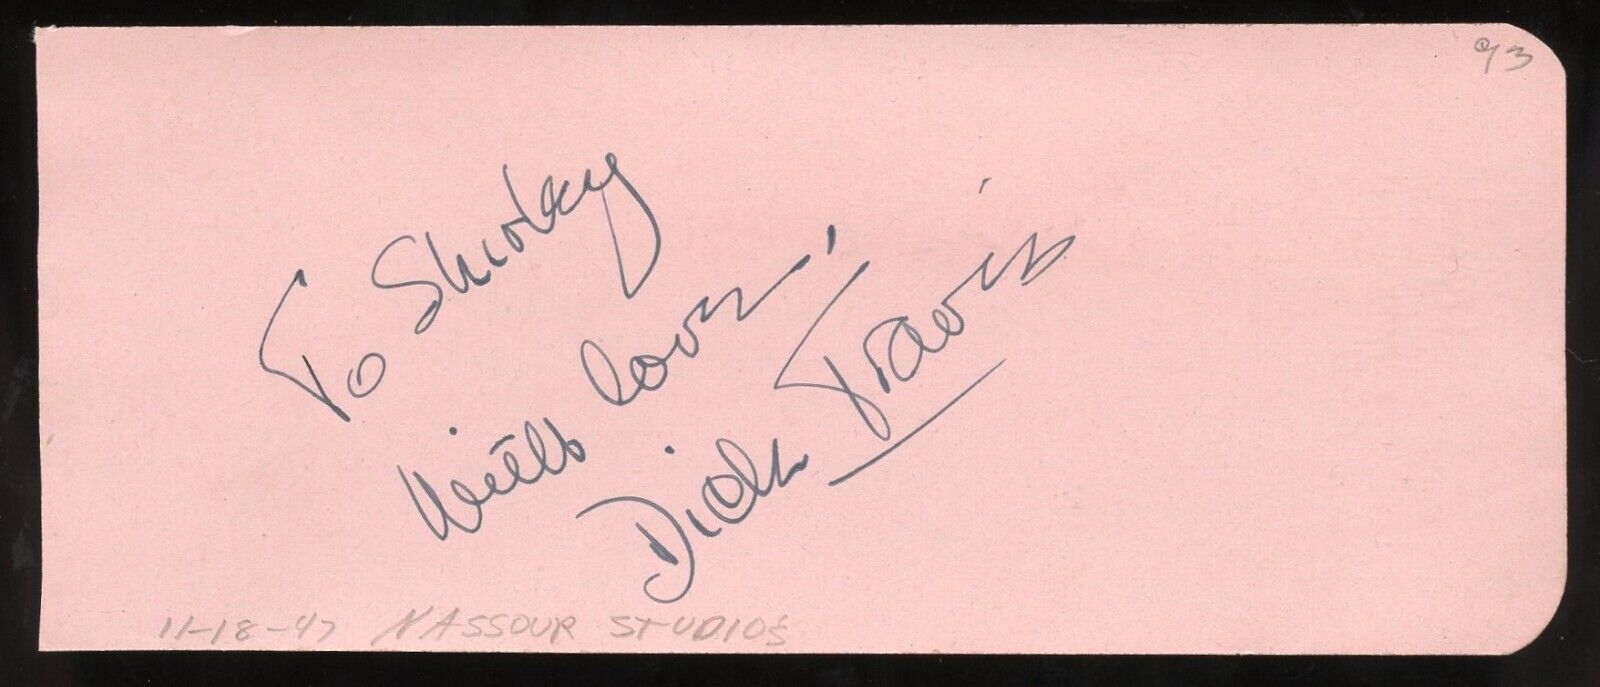 Richard Dick Travis d1989 signed 2x5 autograph on 11-18-47 at Nassour Studios LA